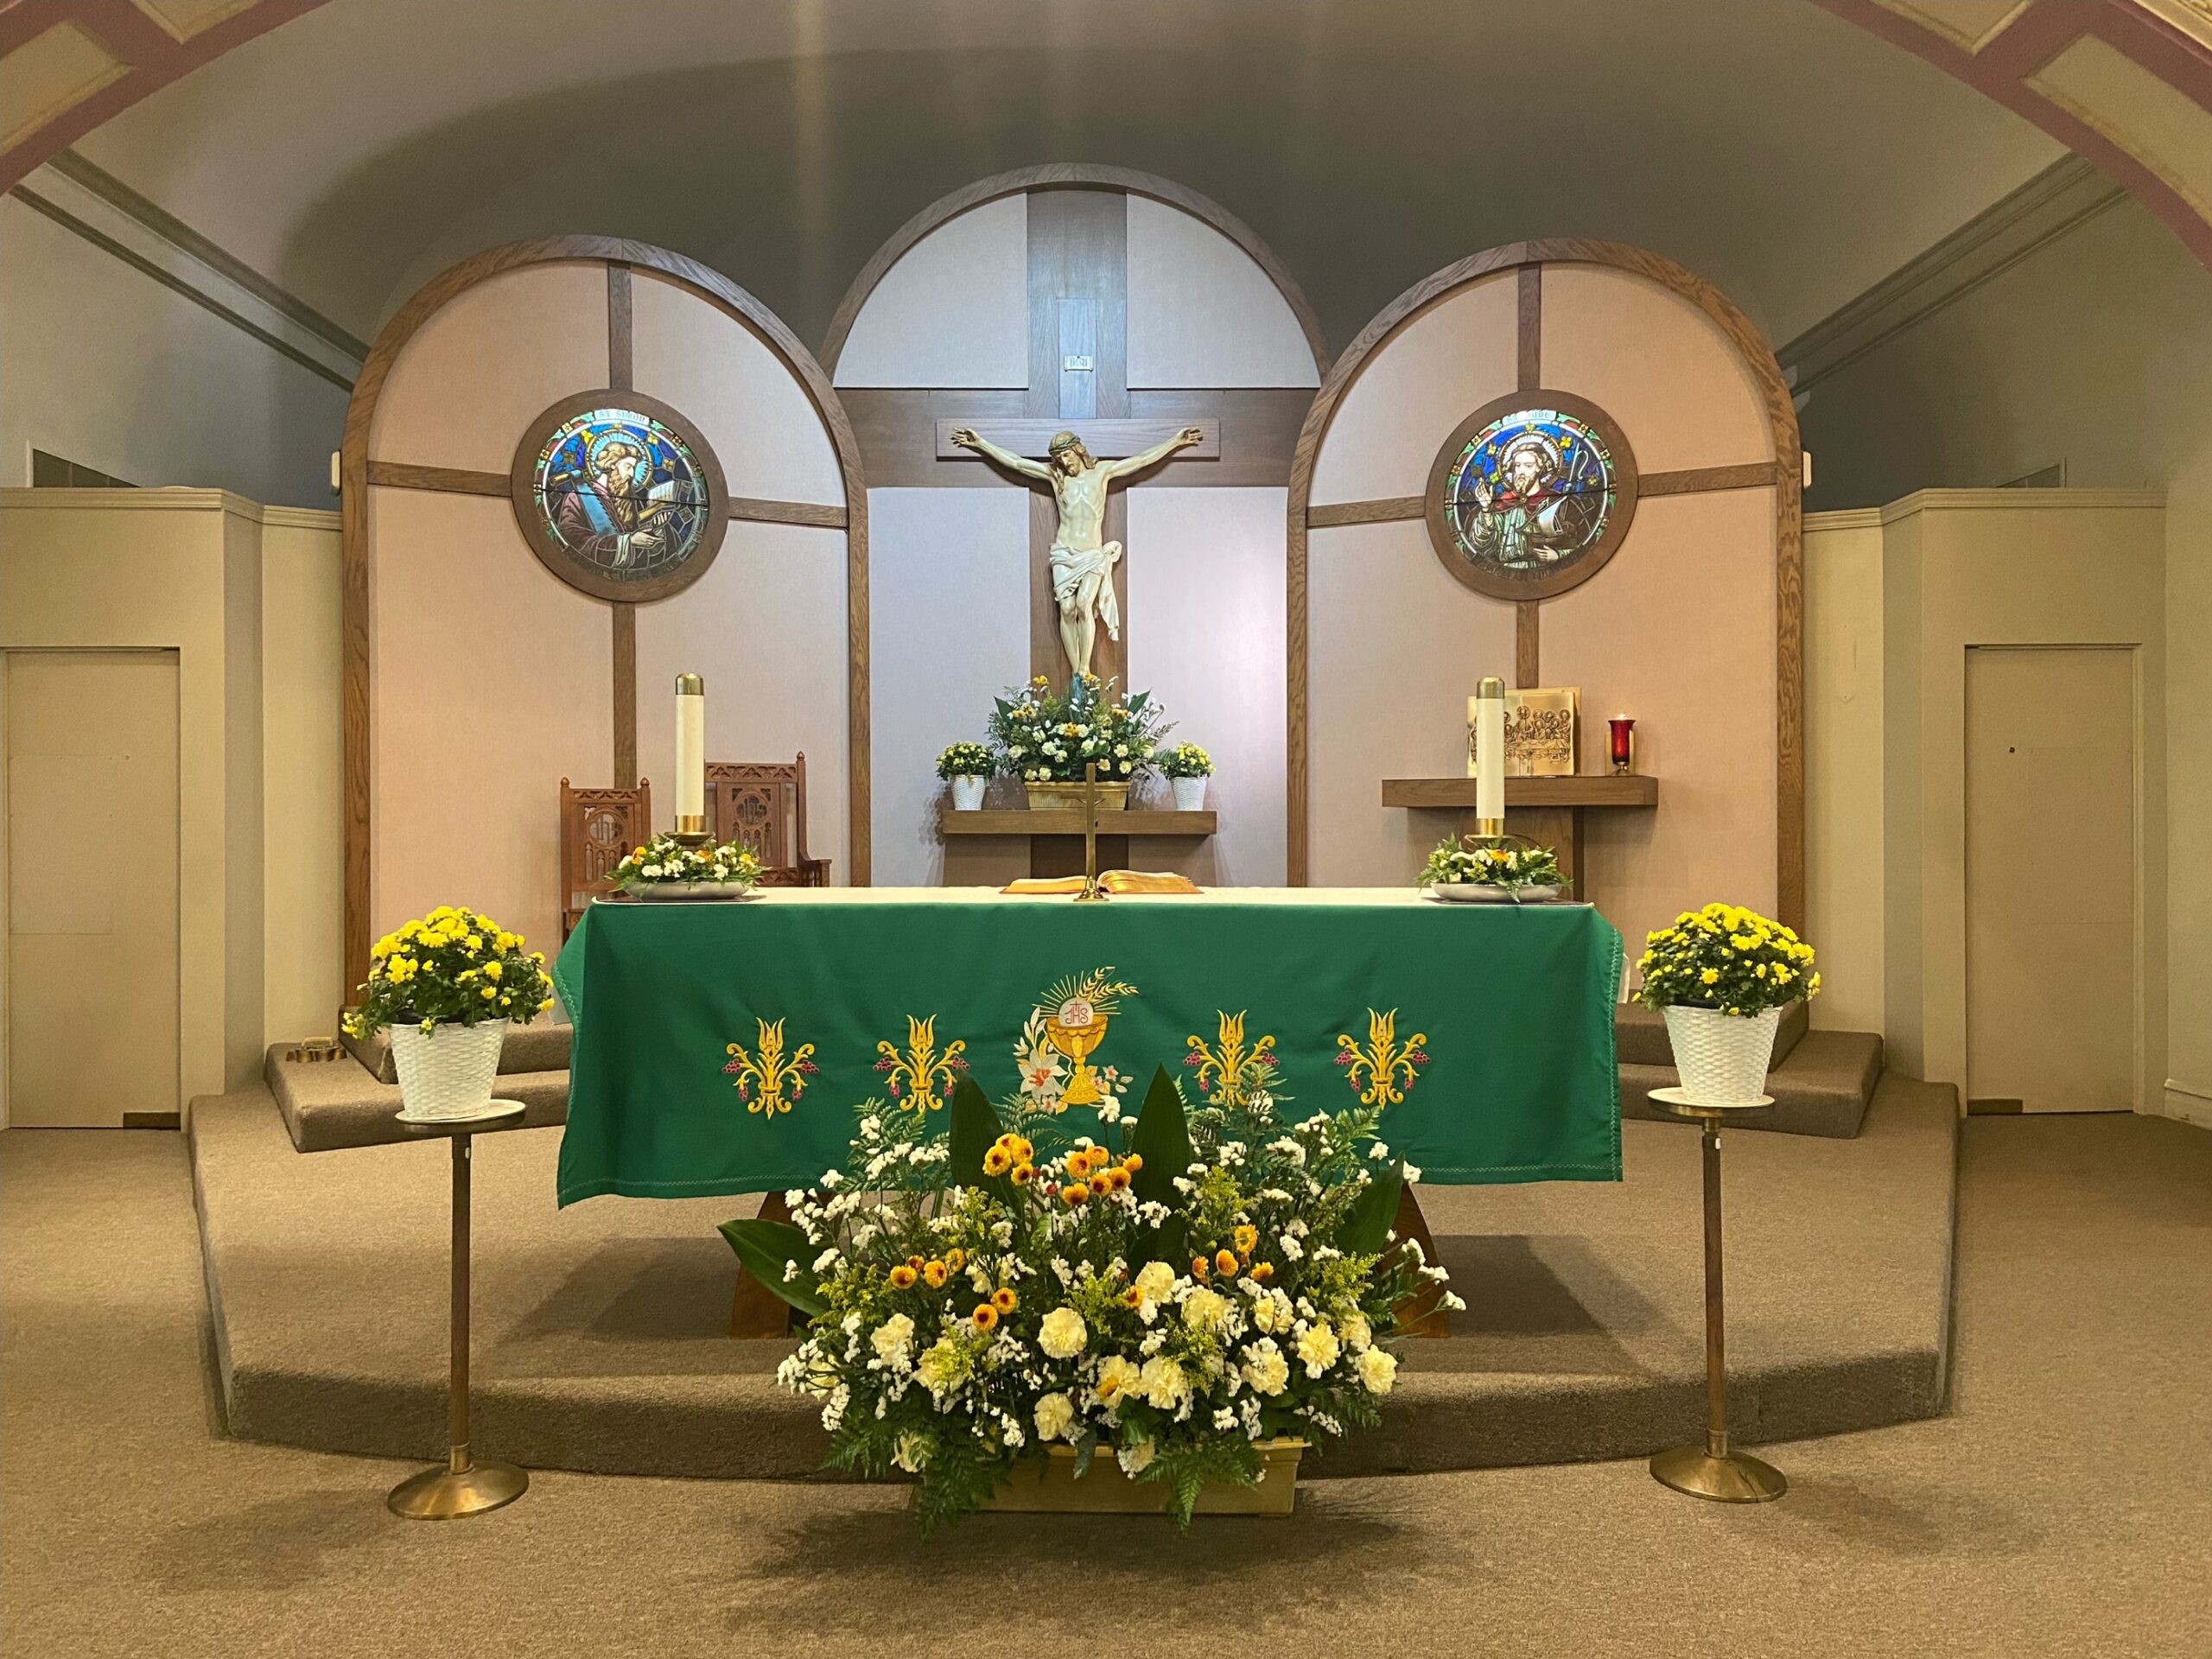 St. Simon Chapel altar decoration